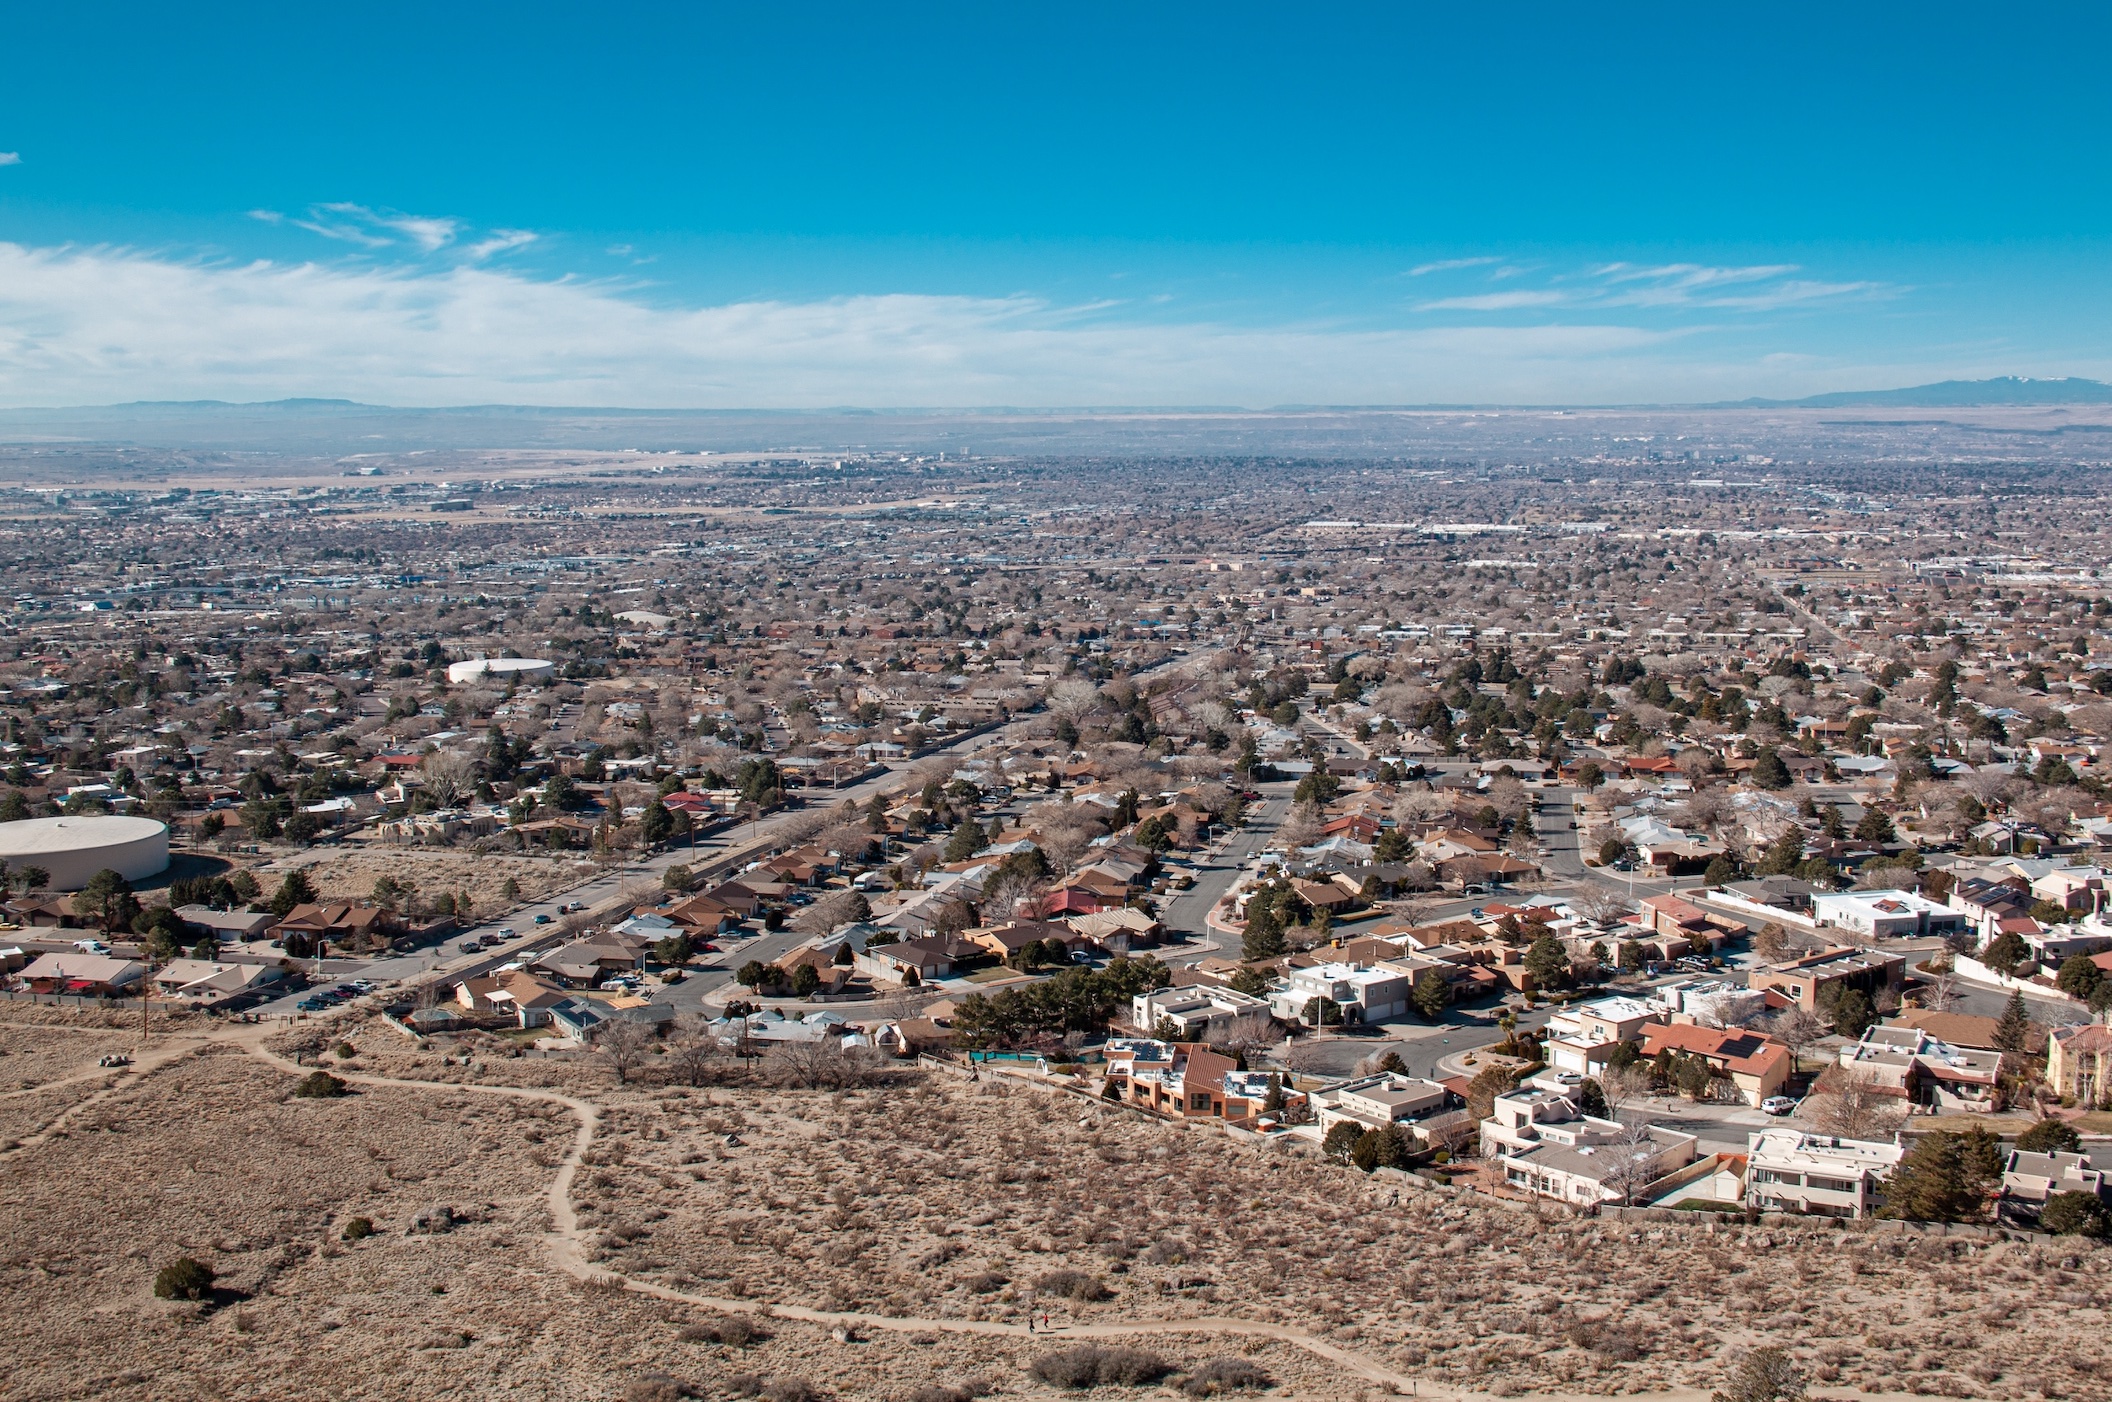 Albuquerque skyline; image by Gabriel Griego, via Unsplash.com.